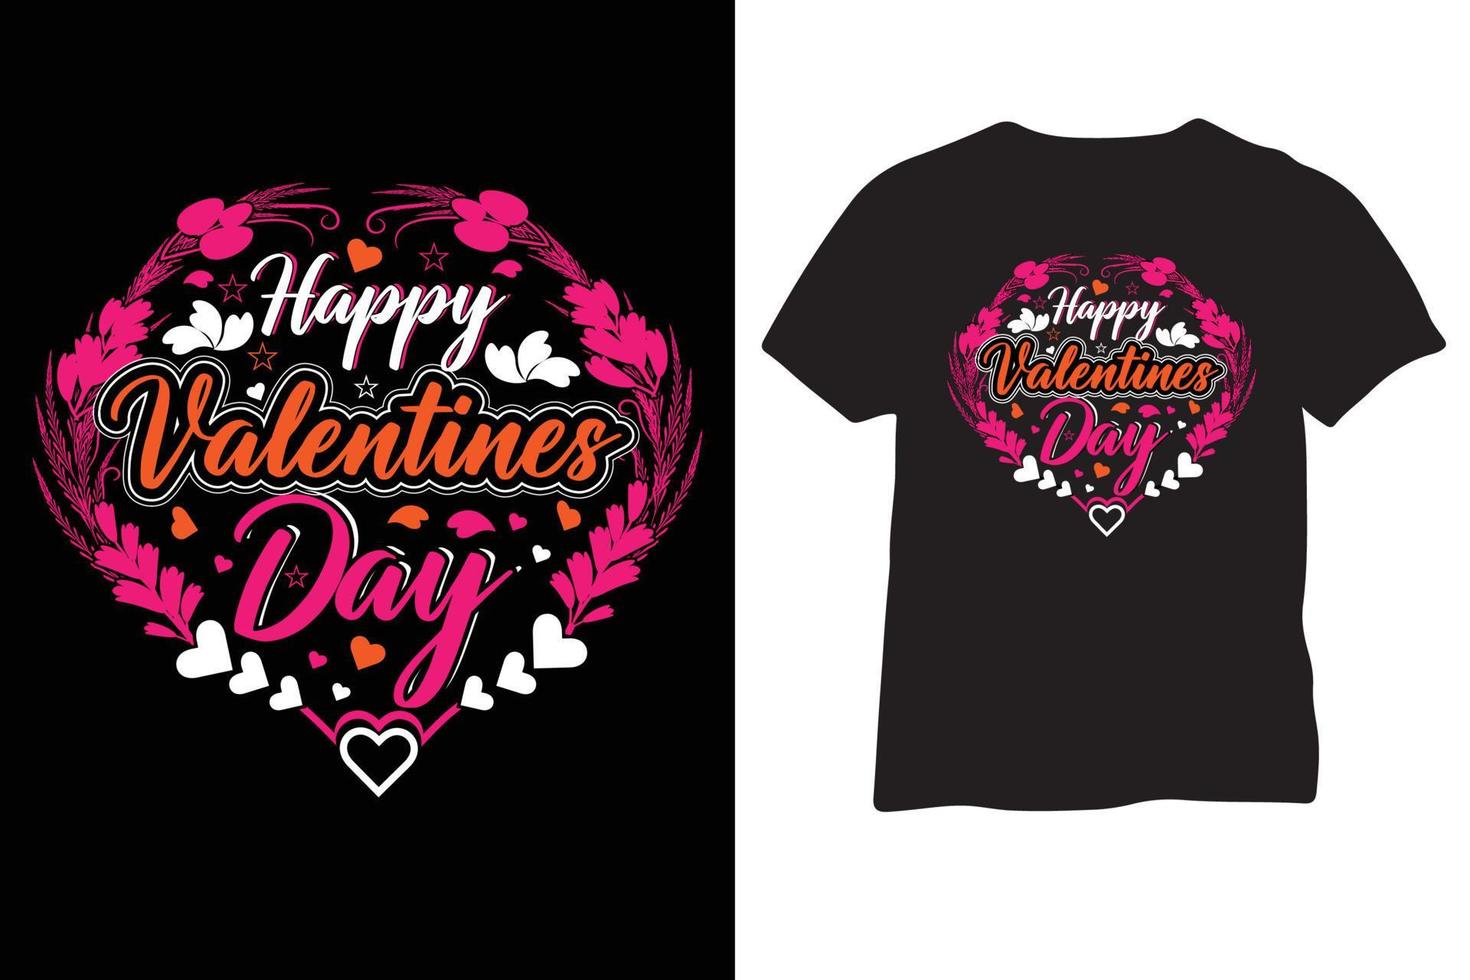 Happy Valentines Day Typografie Valentine Zitat T-Shirt oder auffälliges Design vektor